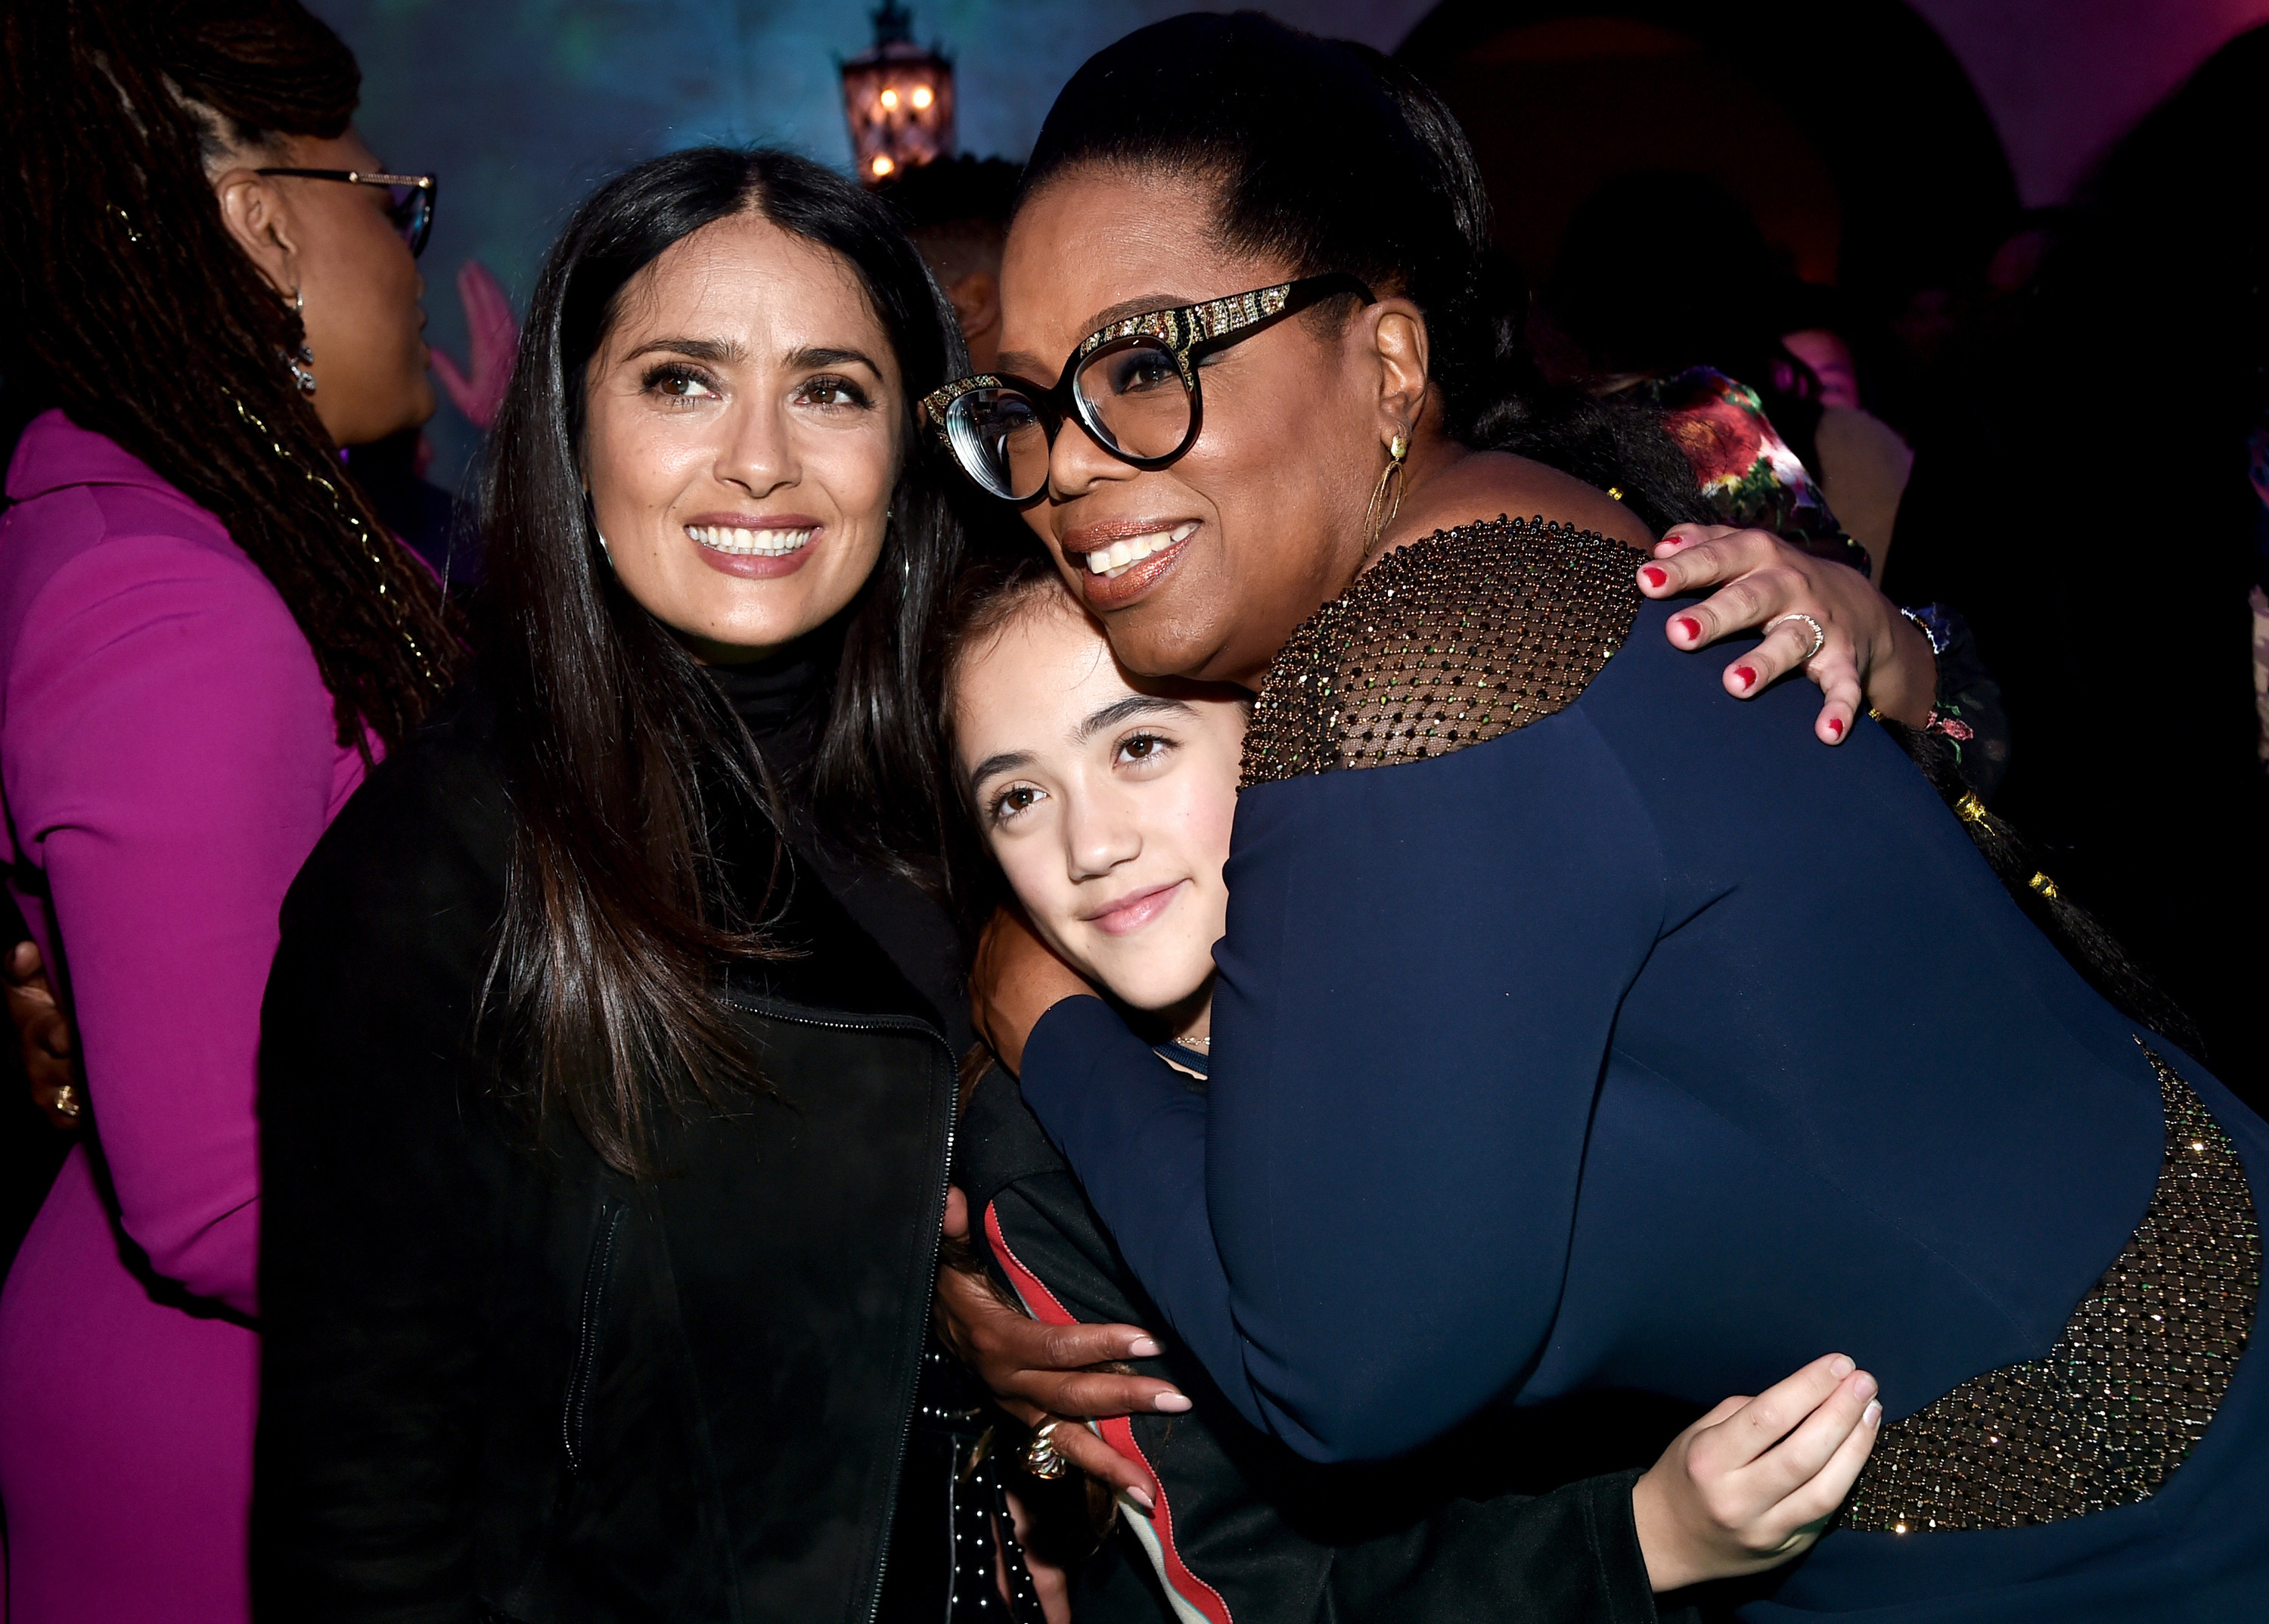 Salma and Oprah hug Valentina tight at an event